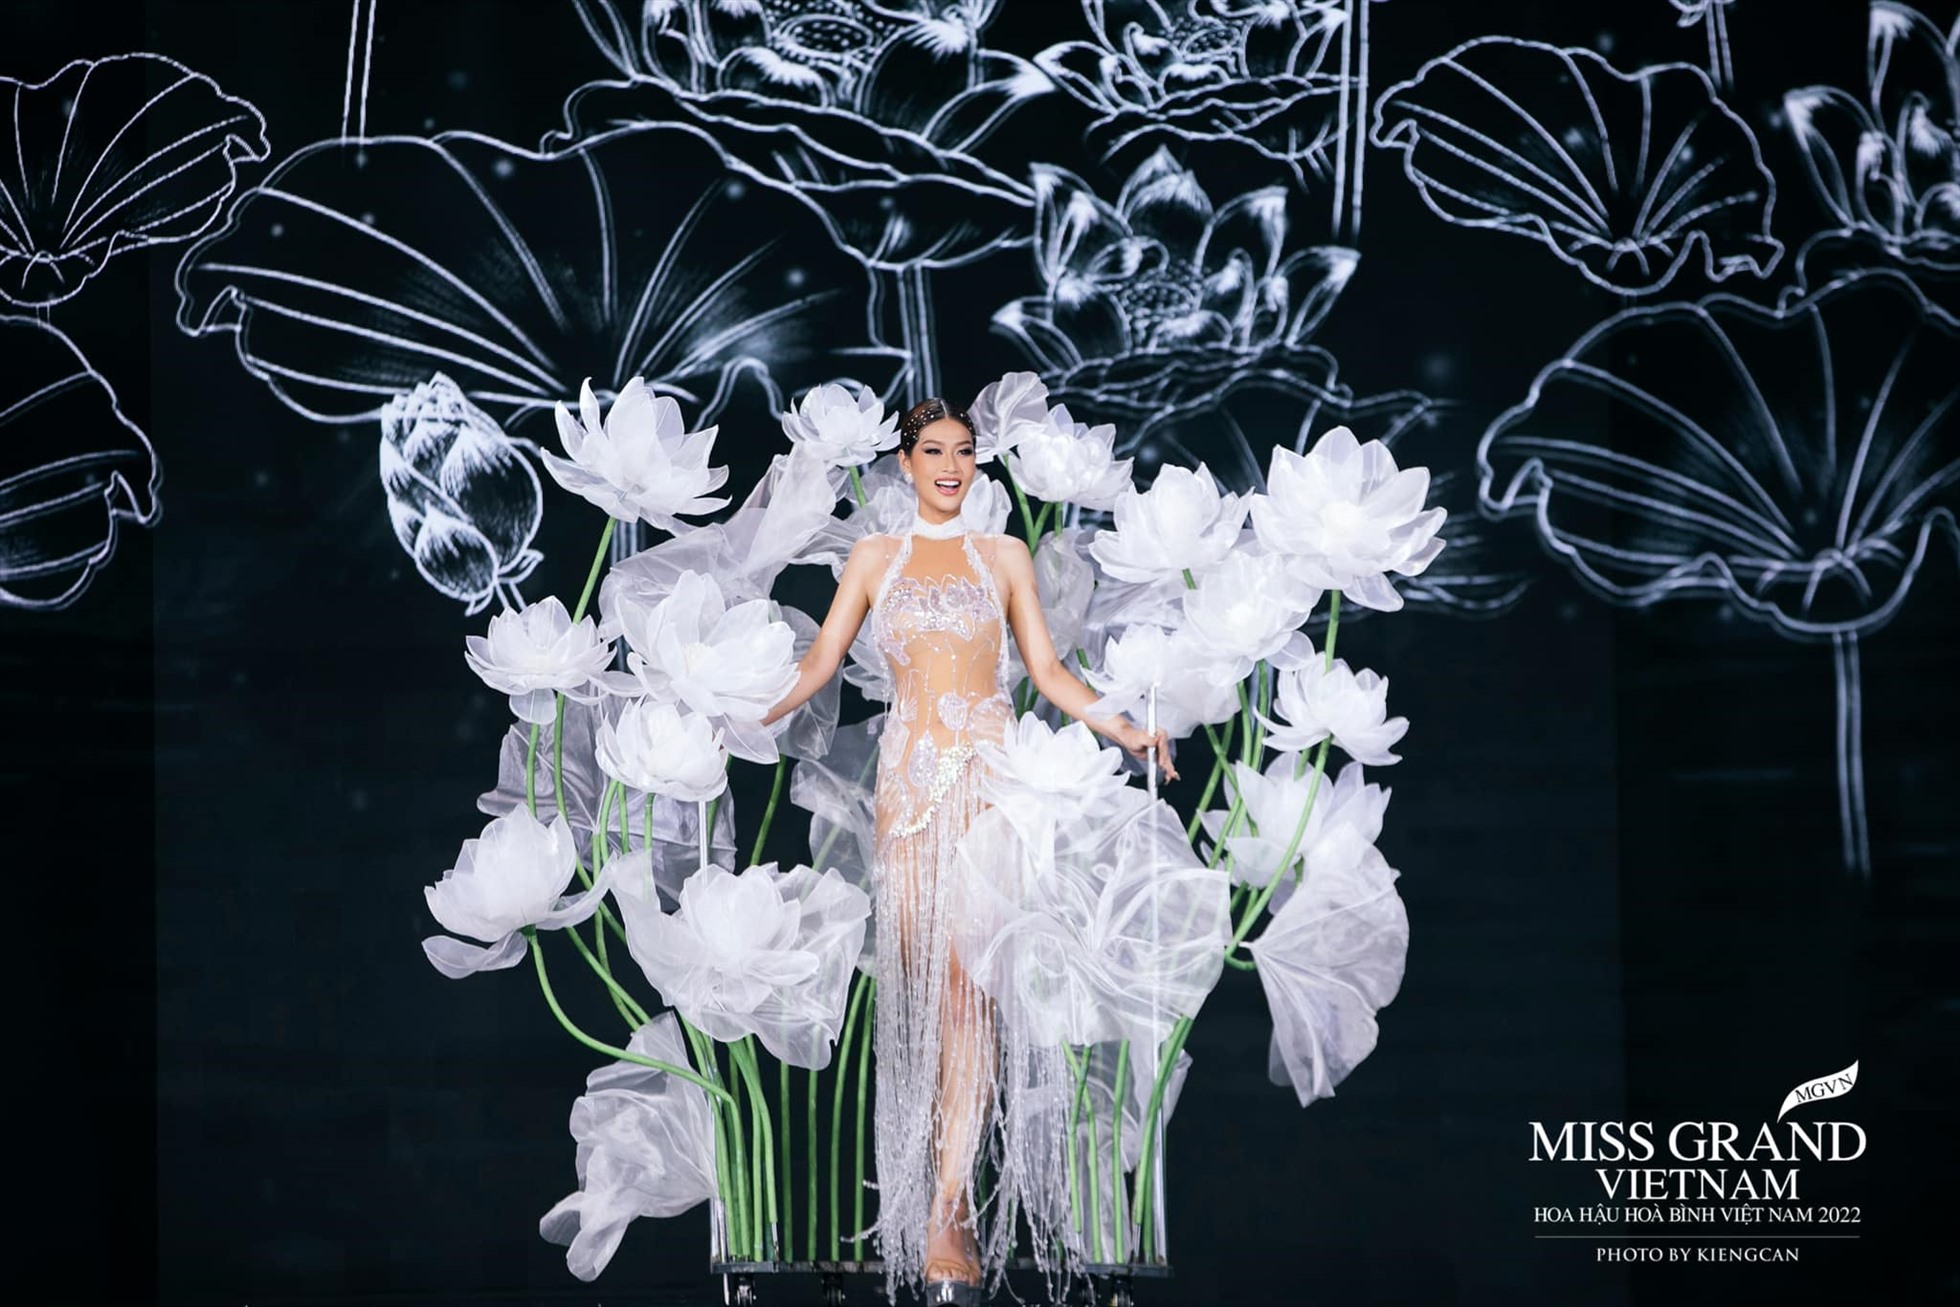 Hành trình chinh phục vương miện của tân Hoa hậu Hòa bình Việt Nam 2022-6